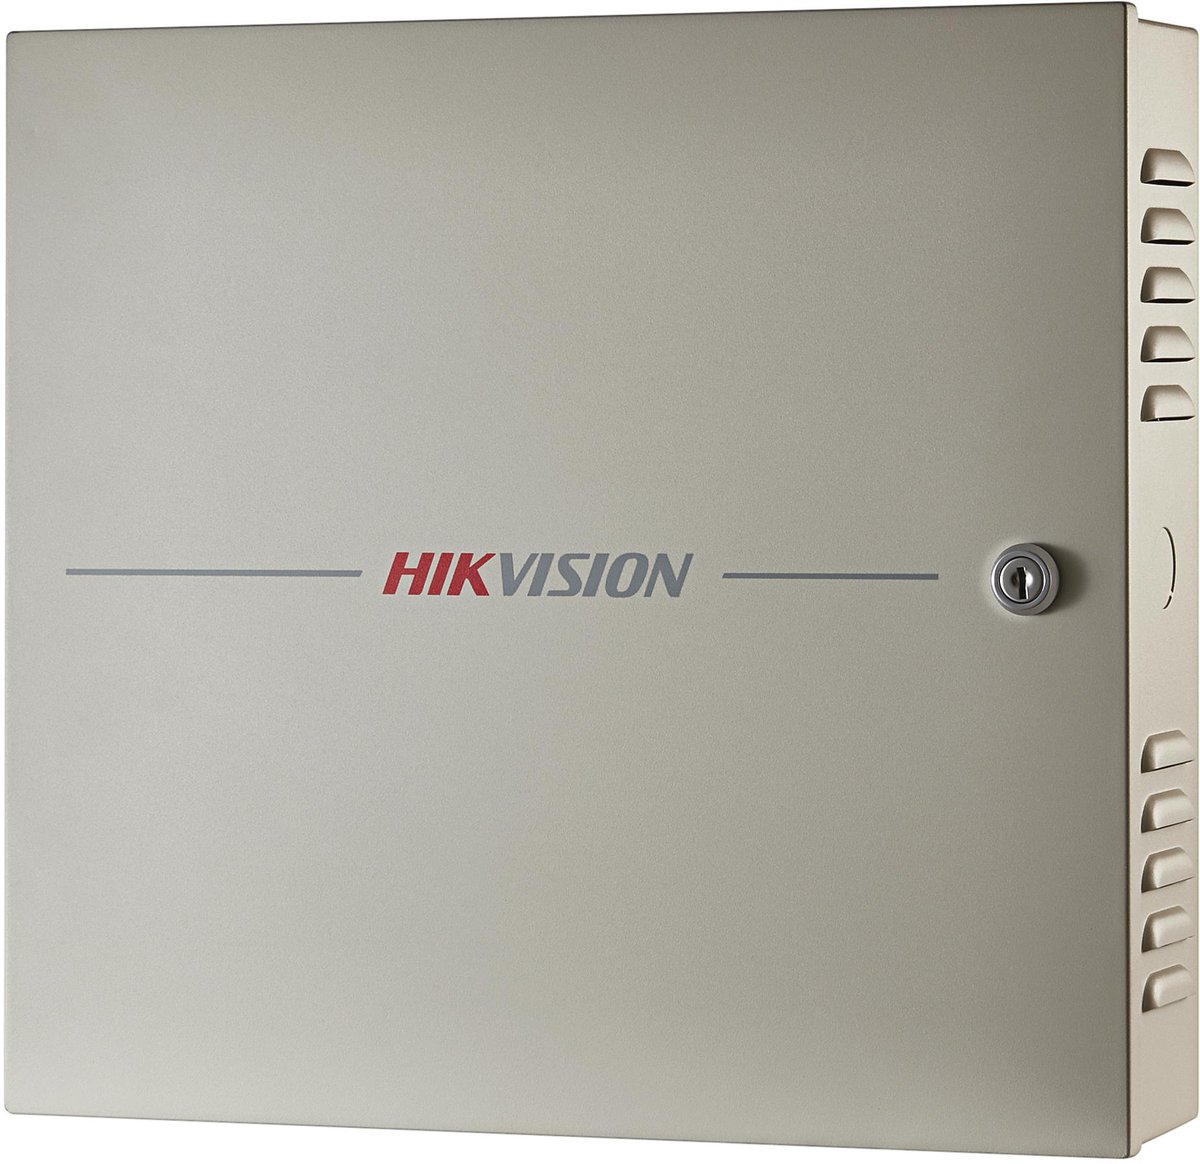 hikvision KONTROLER DOSTĘPU DS-K2604T Hikvision DS-K2604T